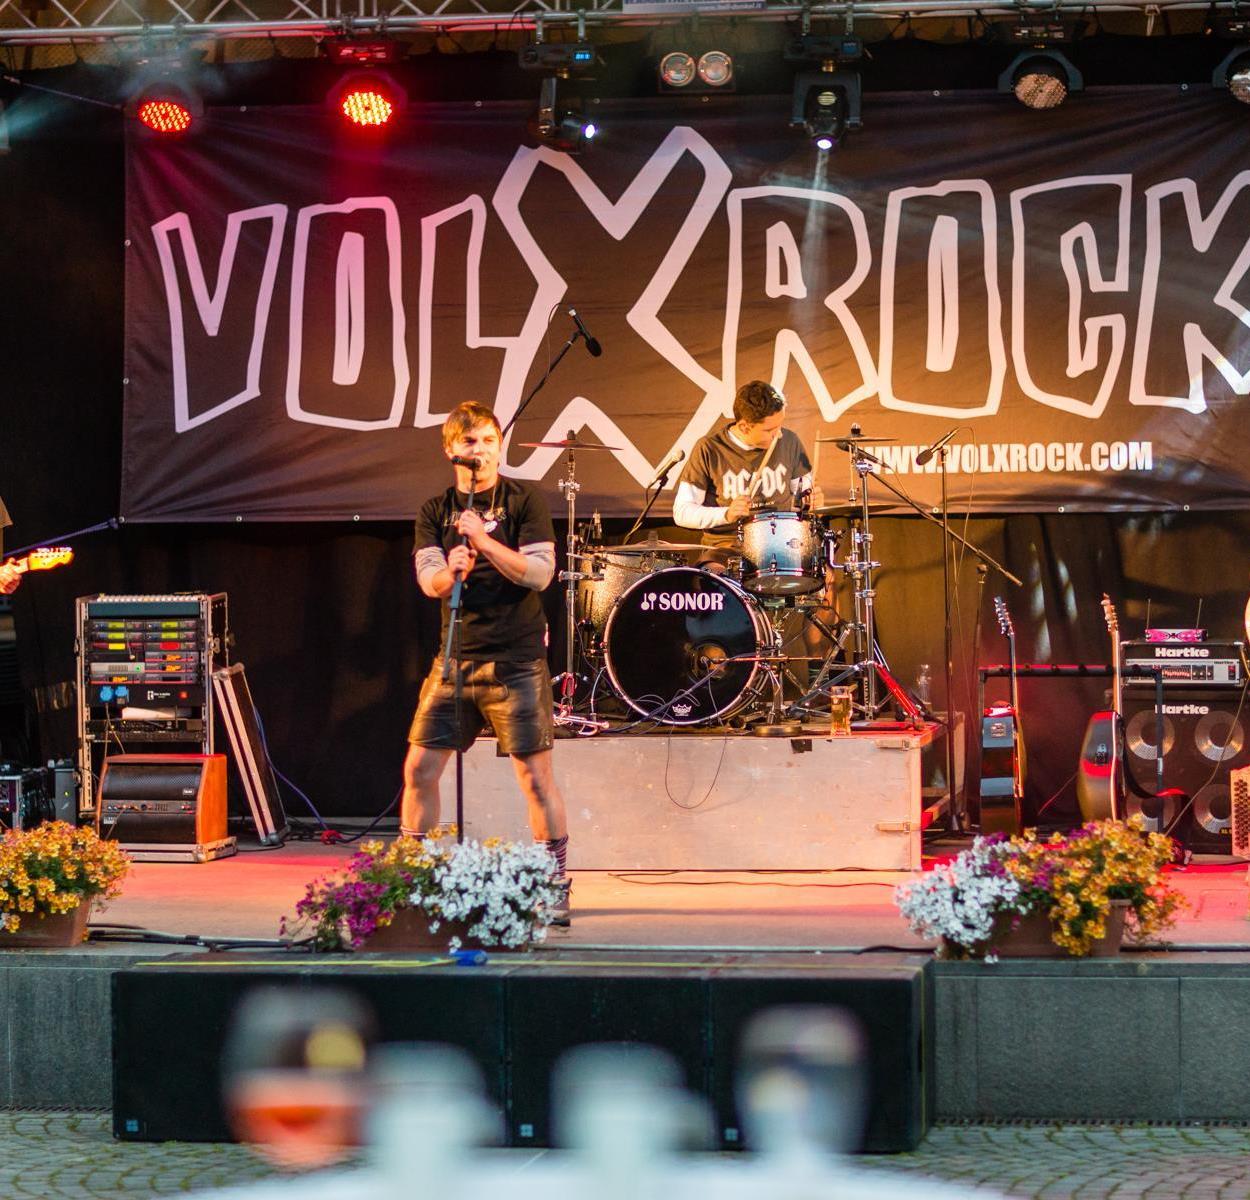 Foto per Serata d'estate con il gruppo "Volxrock" a Schenna